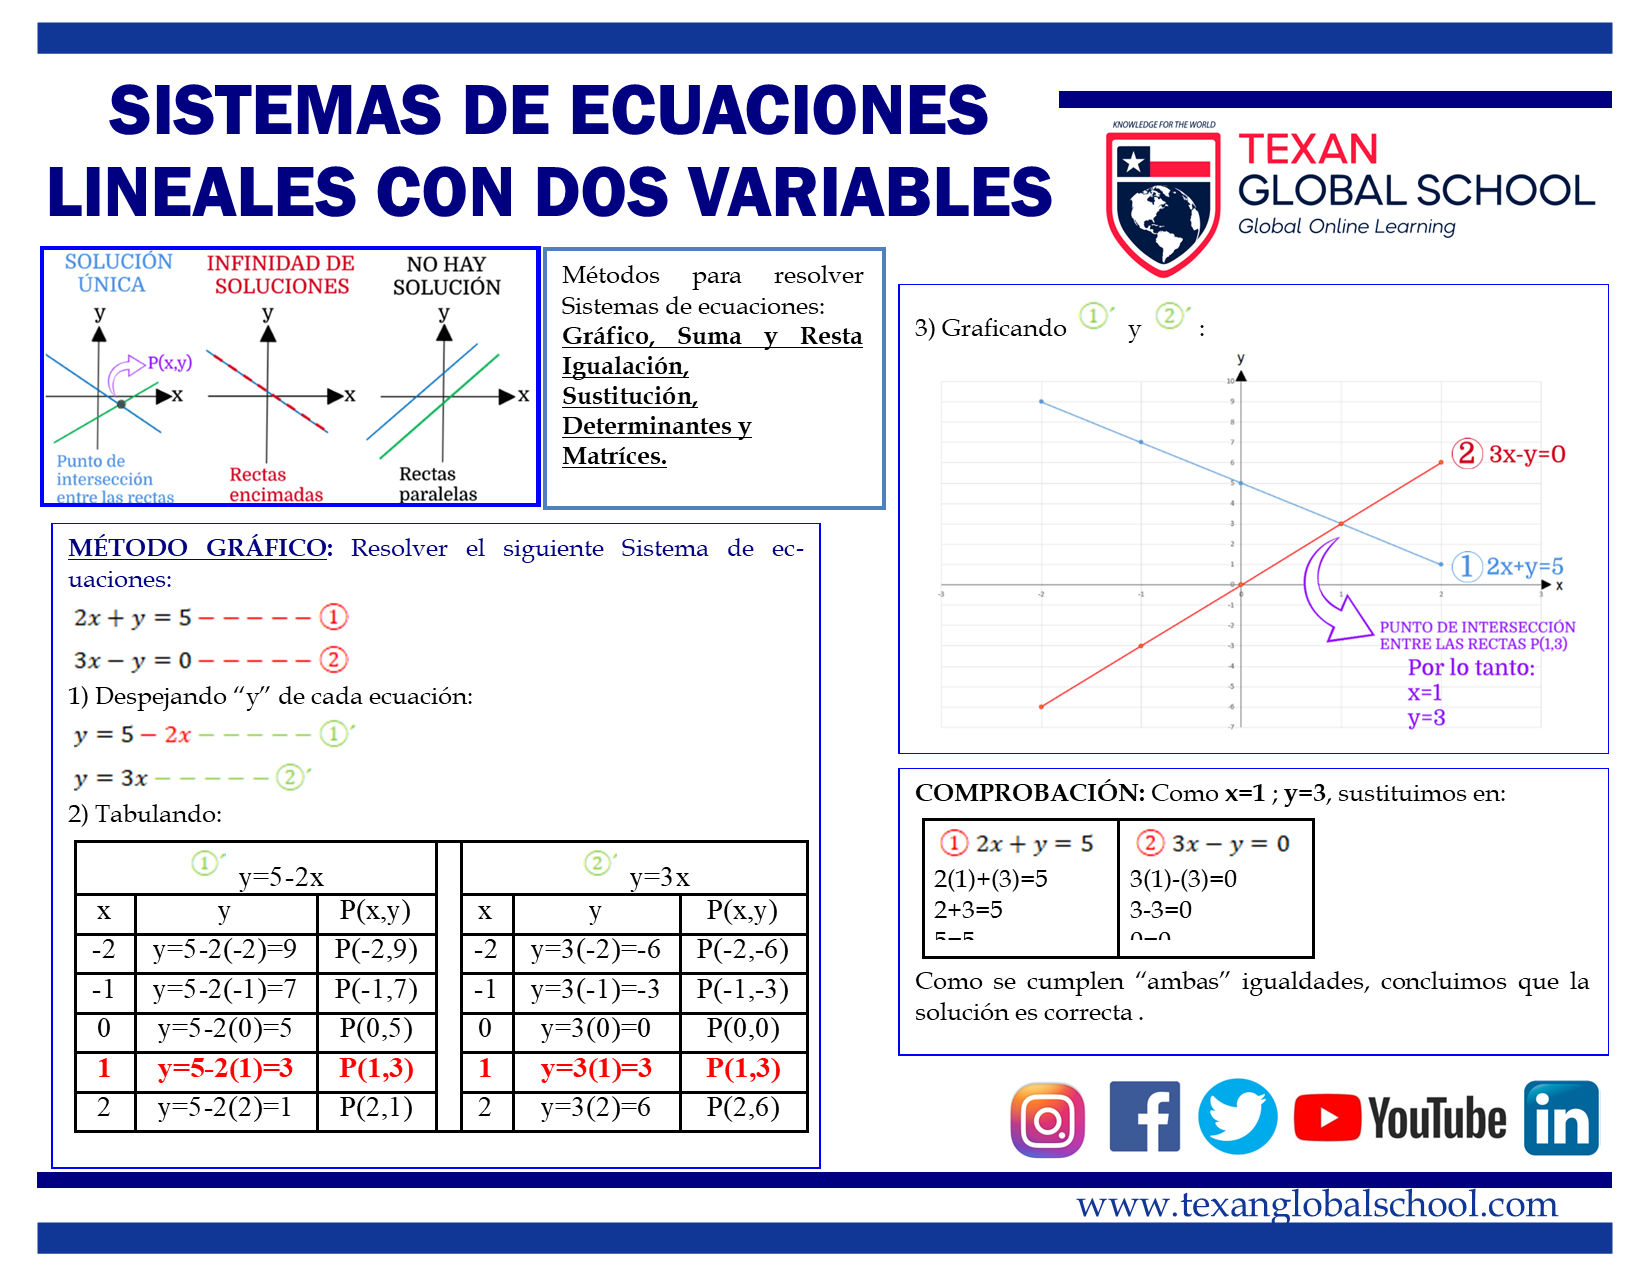 Sistemas de Ecuaciones Lineales 2×2